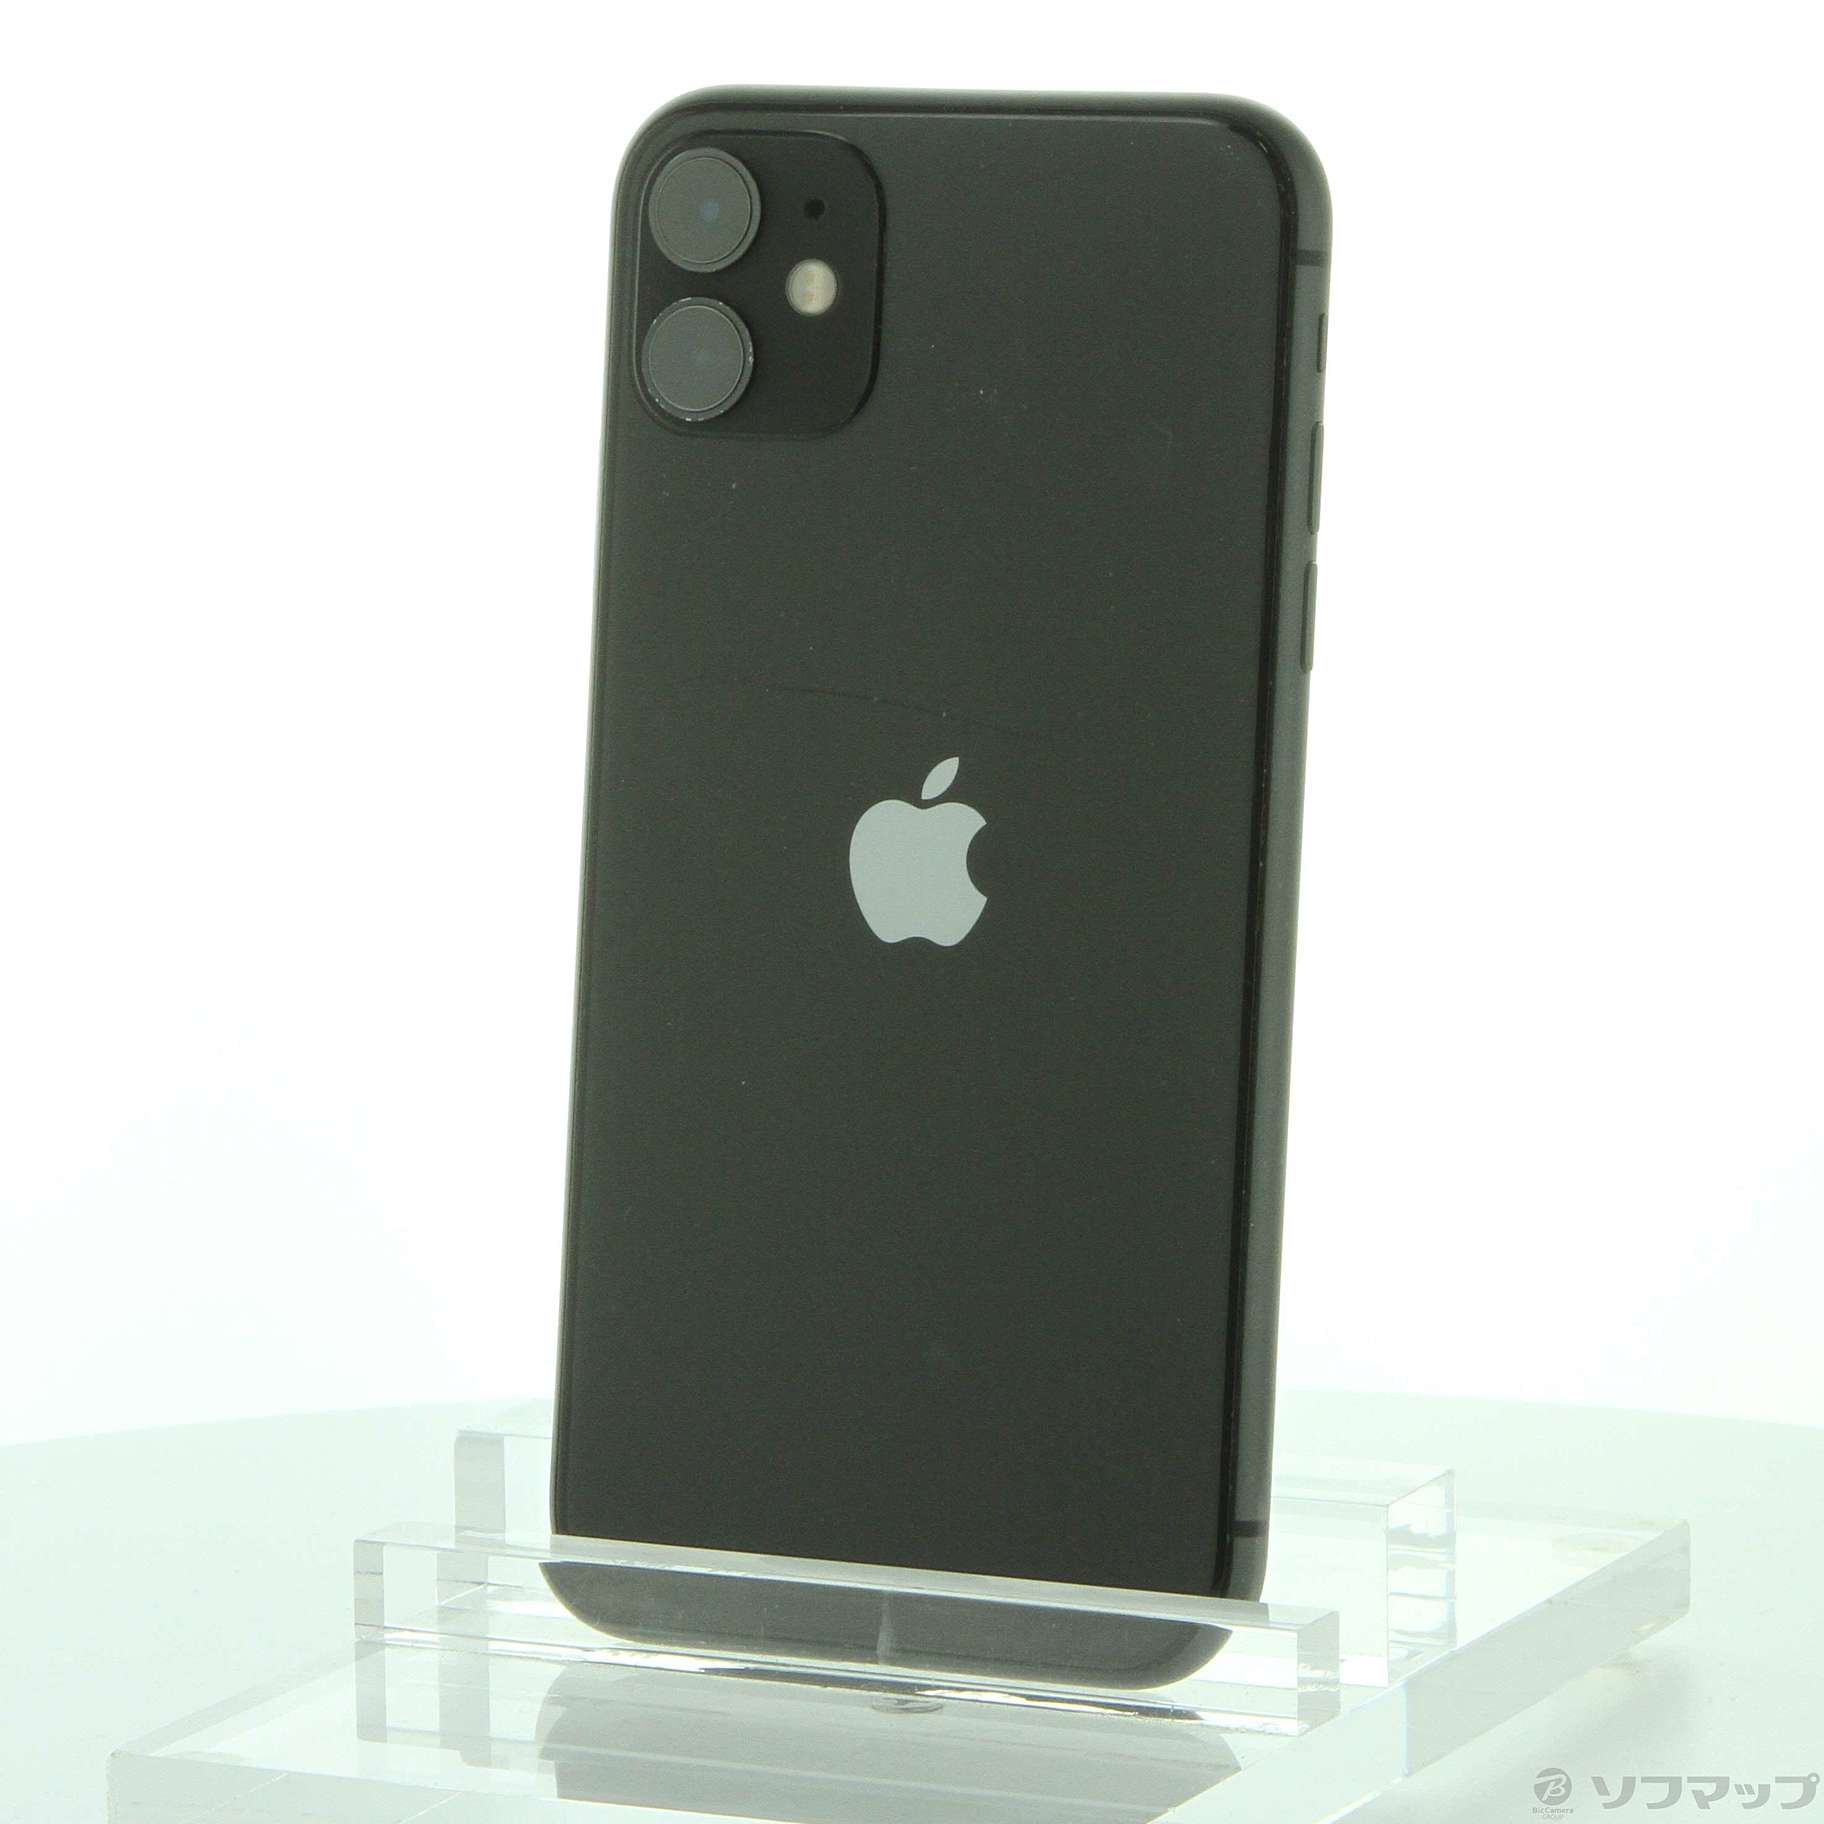 ブラック機種対応機種アップル iPhone11 256GB ブラック ソフトバンク